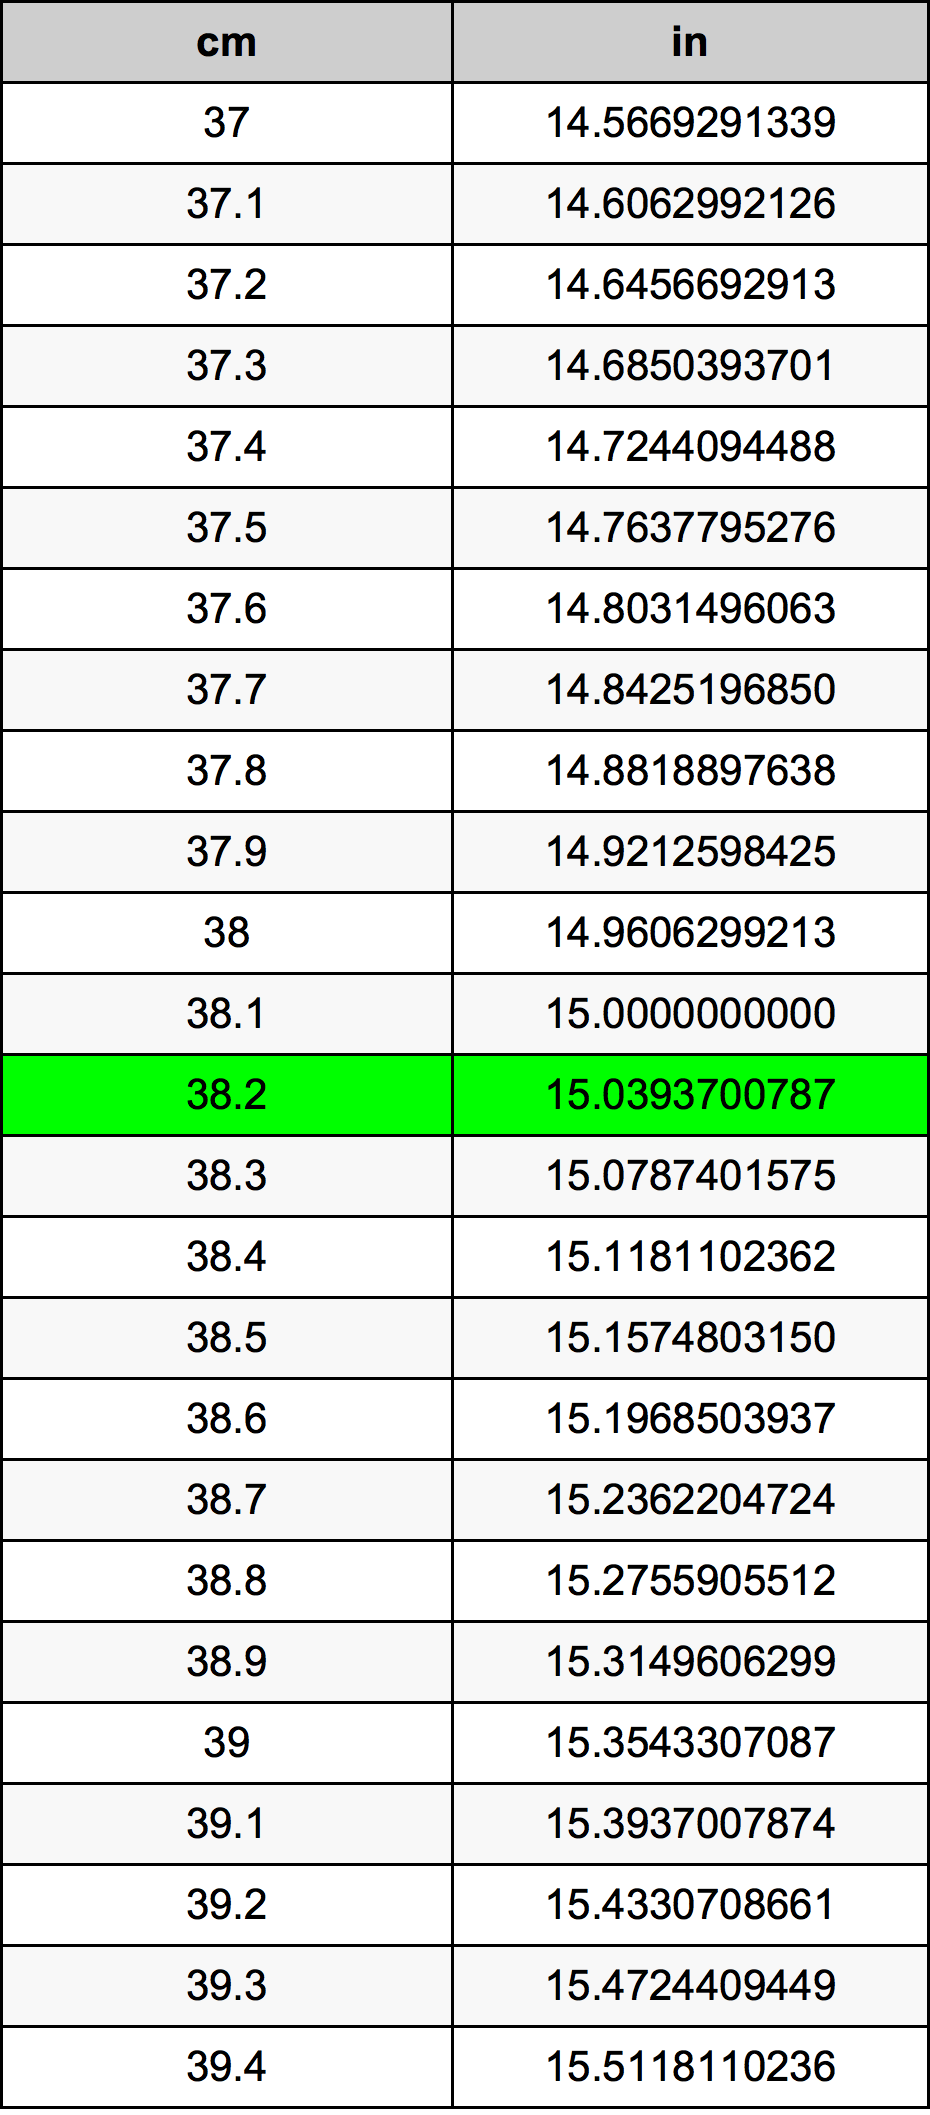 38.2 Centiméter átszámítási táblázat